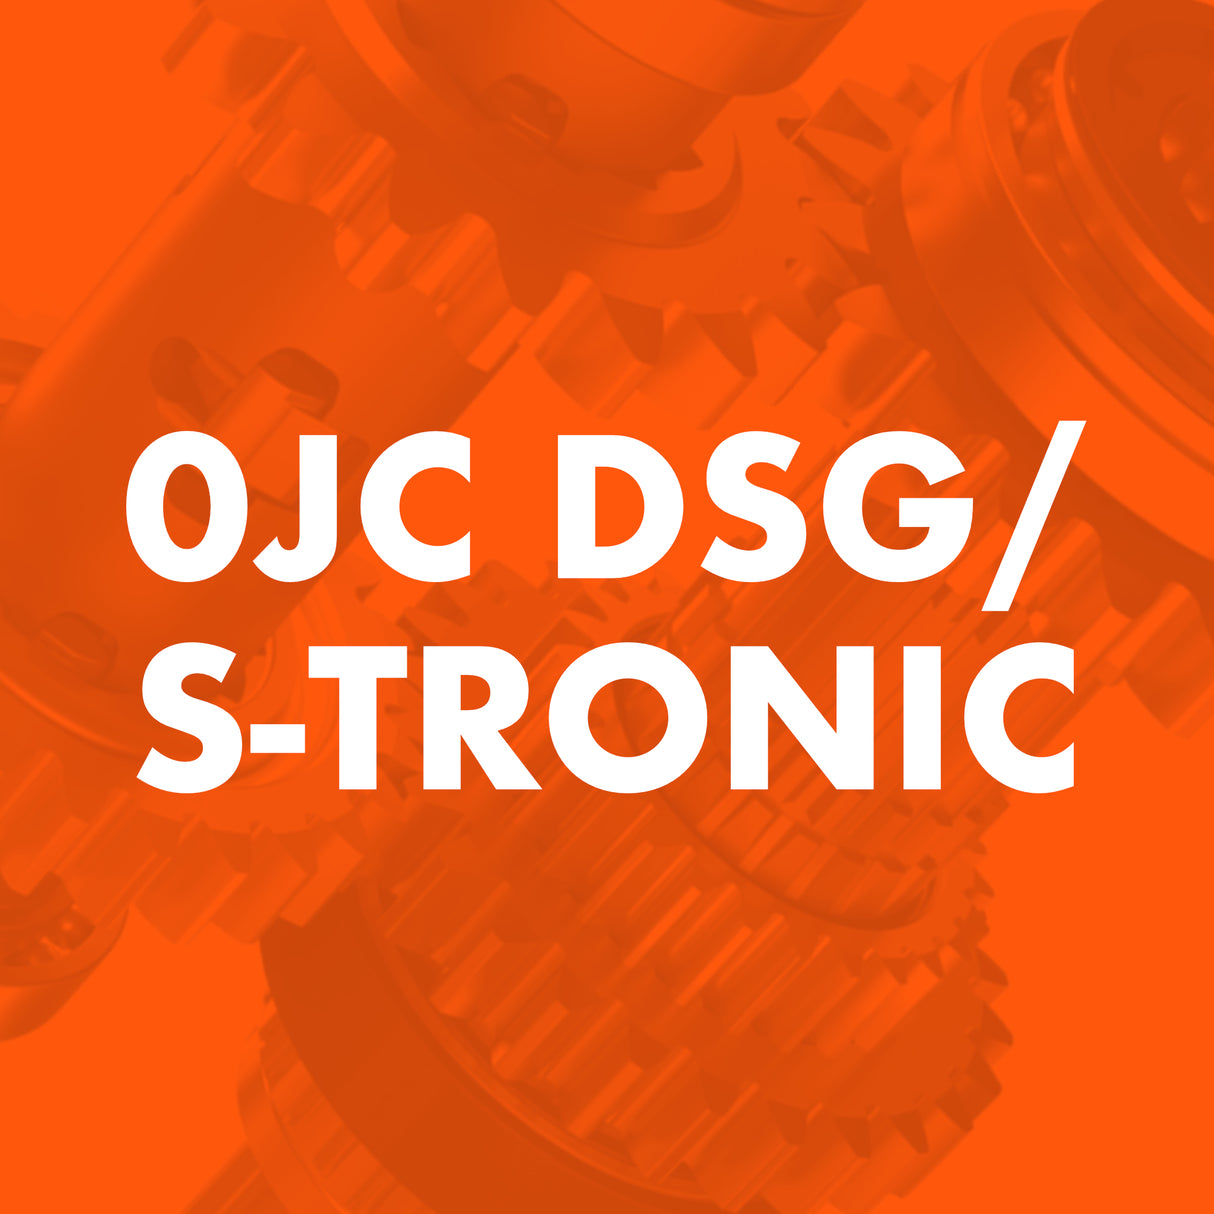 0JC DSG/S-Tronic Catalogue